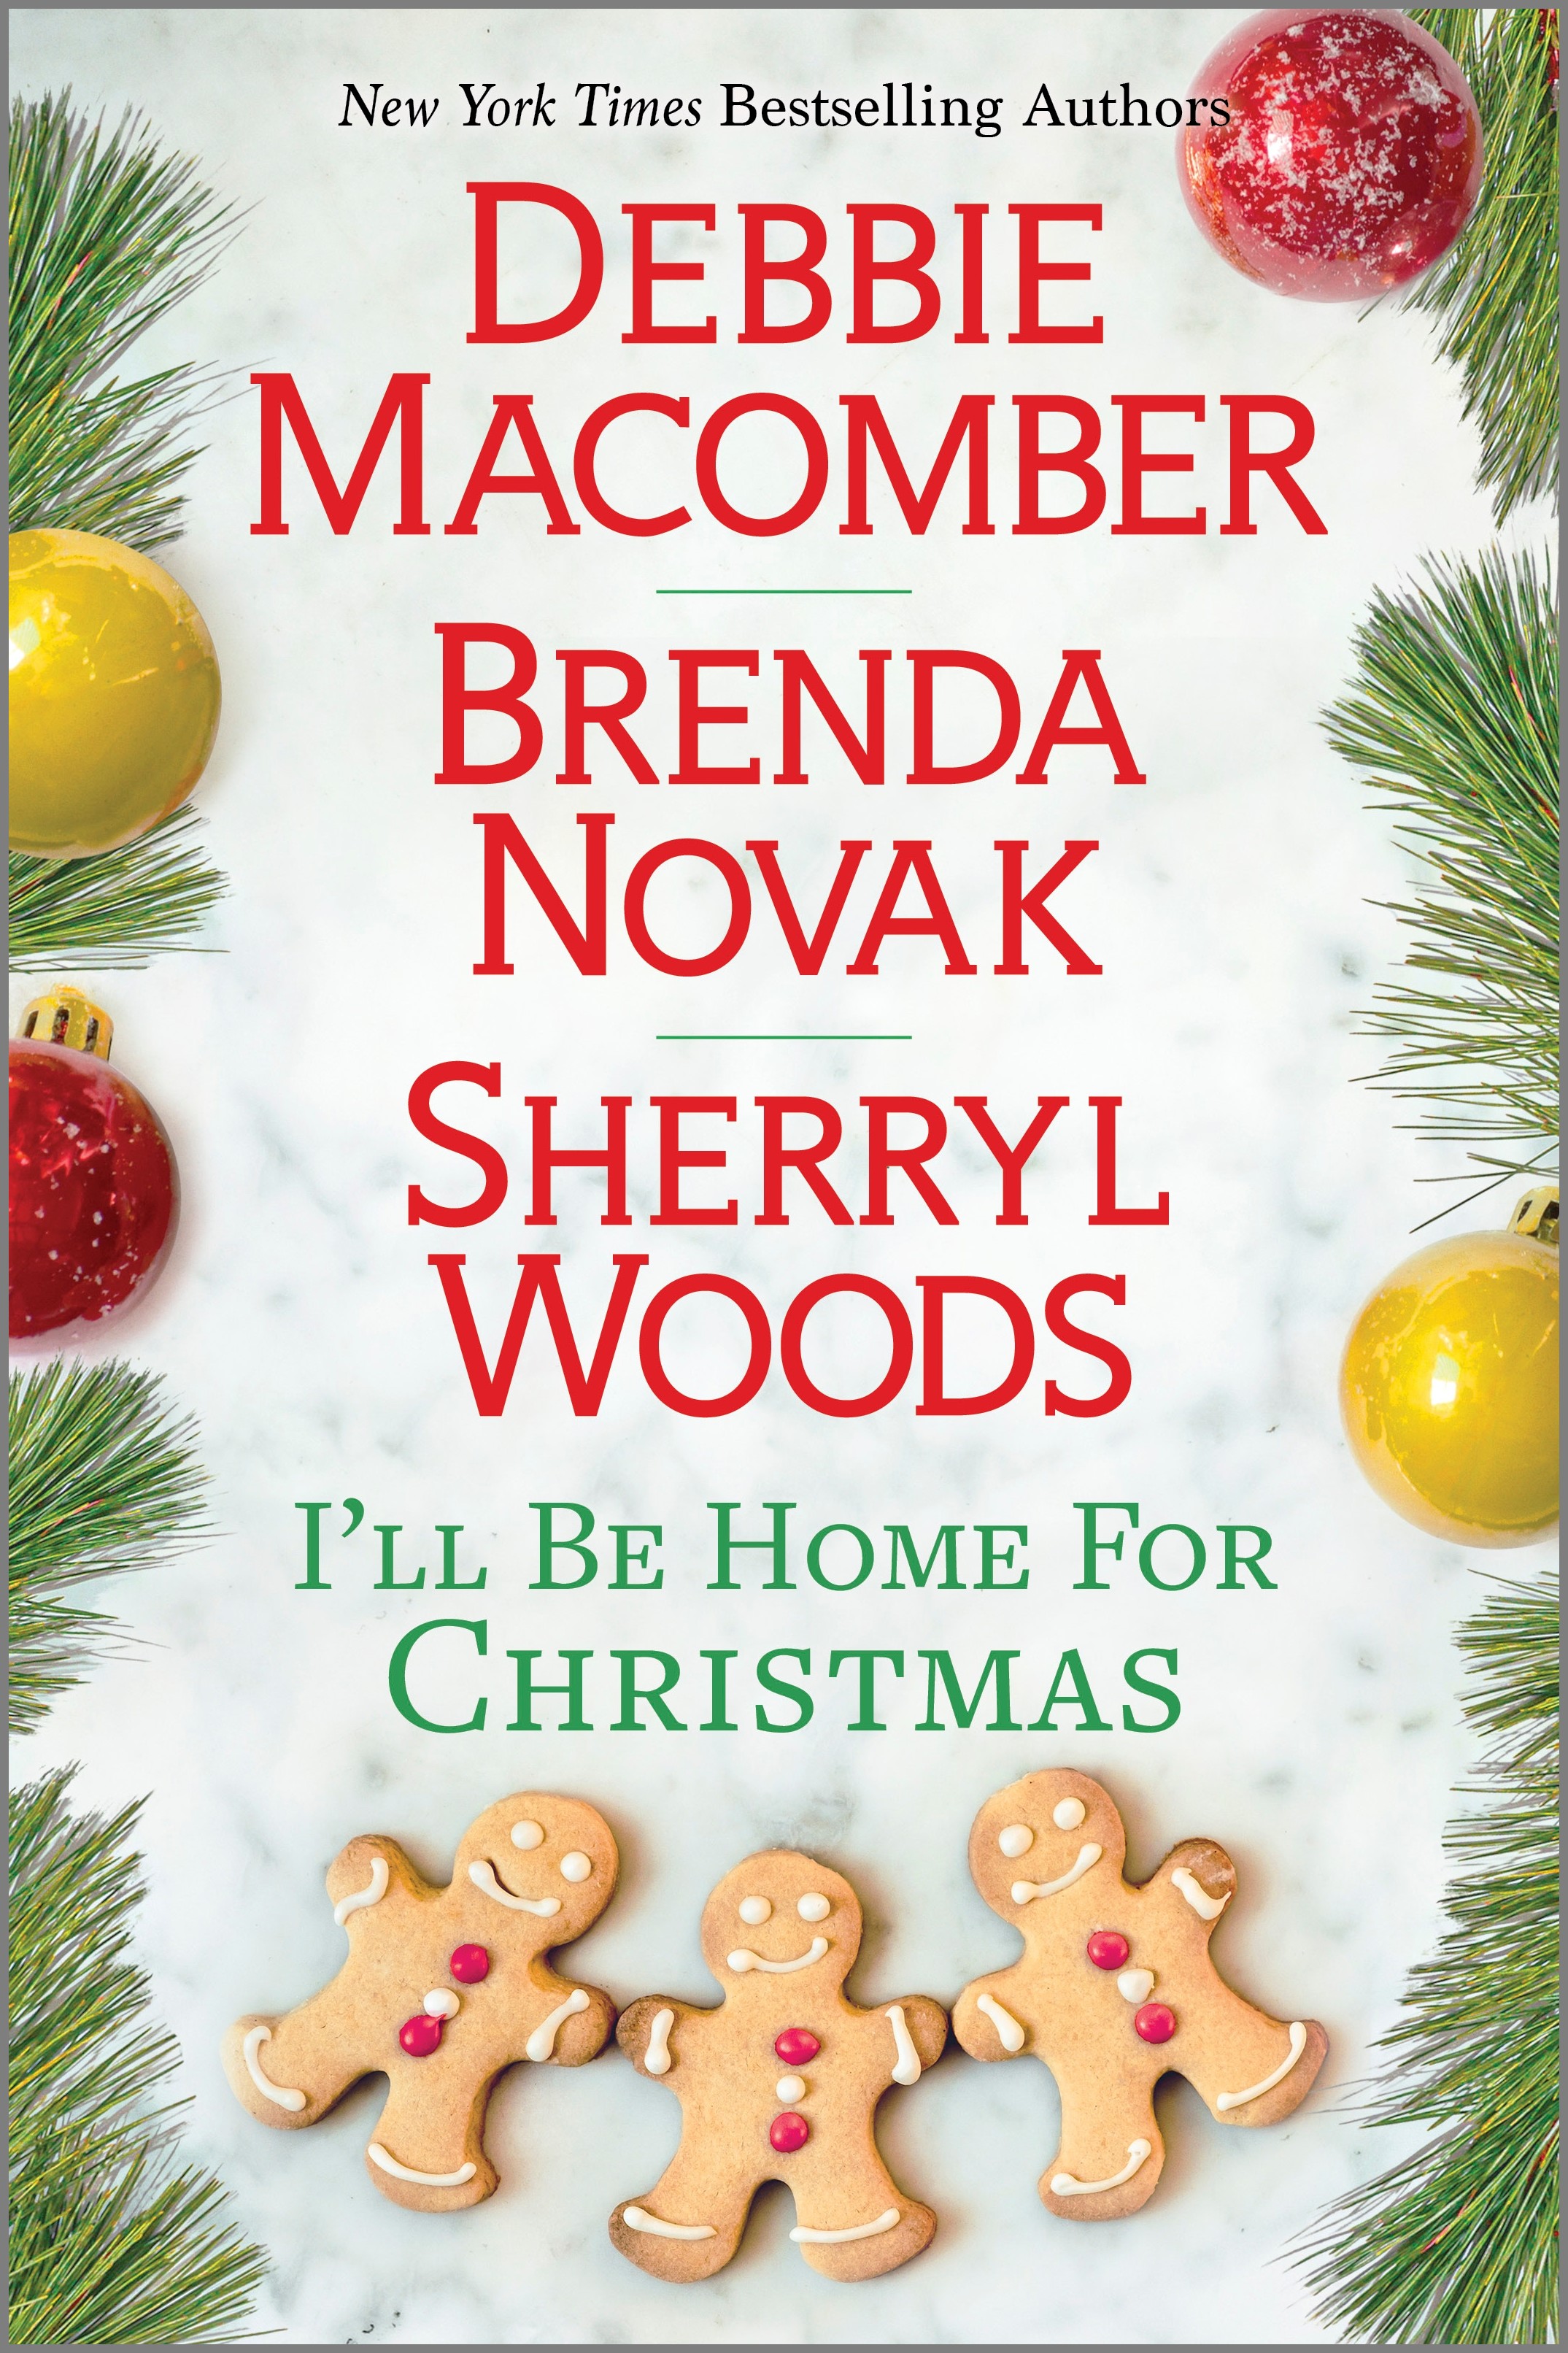 I'll Be Home for Christmas : A Novel | Macomber, Debbie (Auteur) | Novak, Brenda (Auteur) | Woods, Sherryl (Auteur)